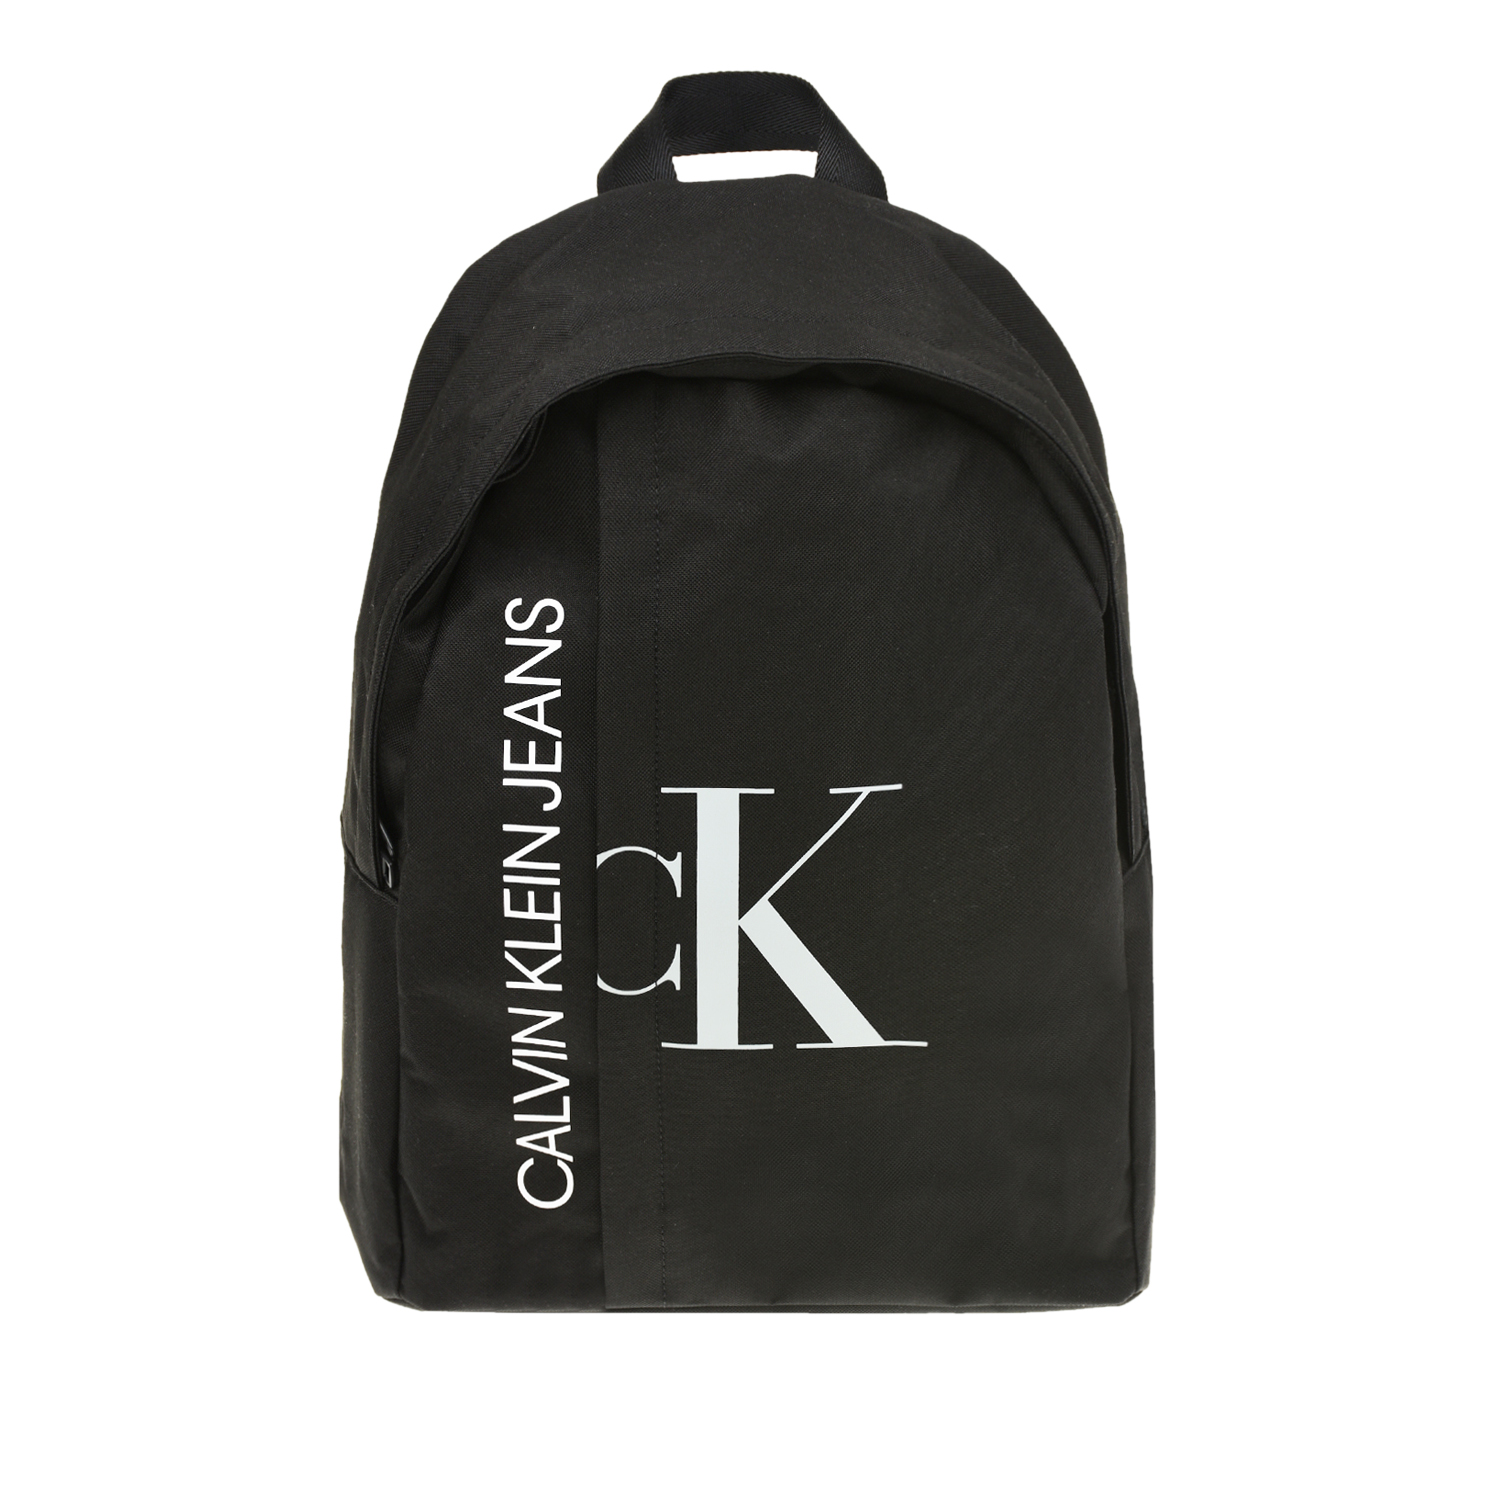 Черный рюкзак с логотипом, 28x38x15 см Calvin Klein детский, размер unica - фото 1